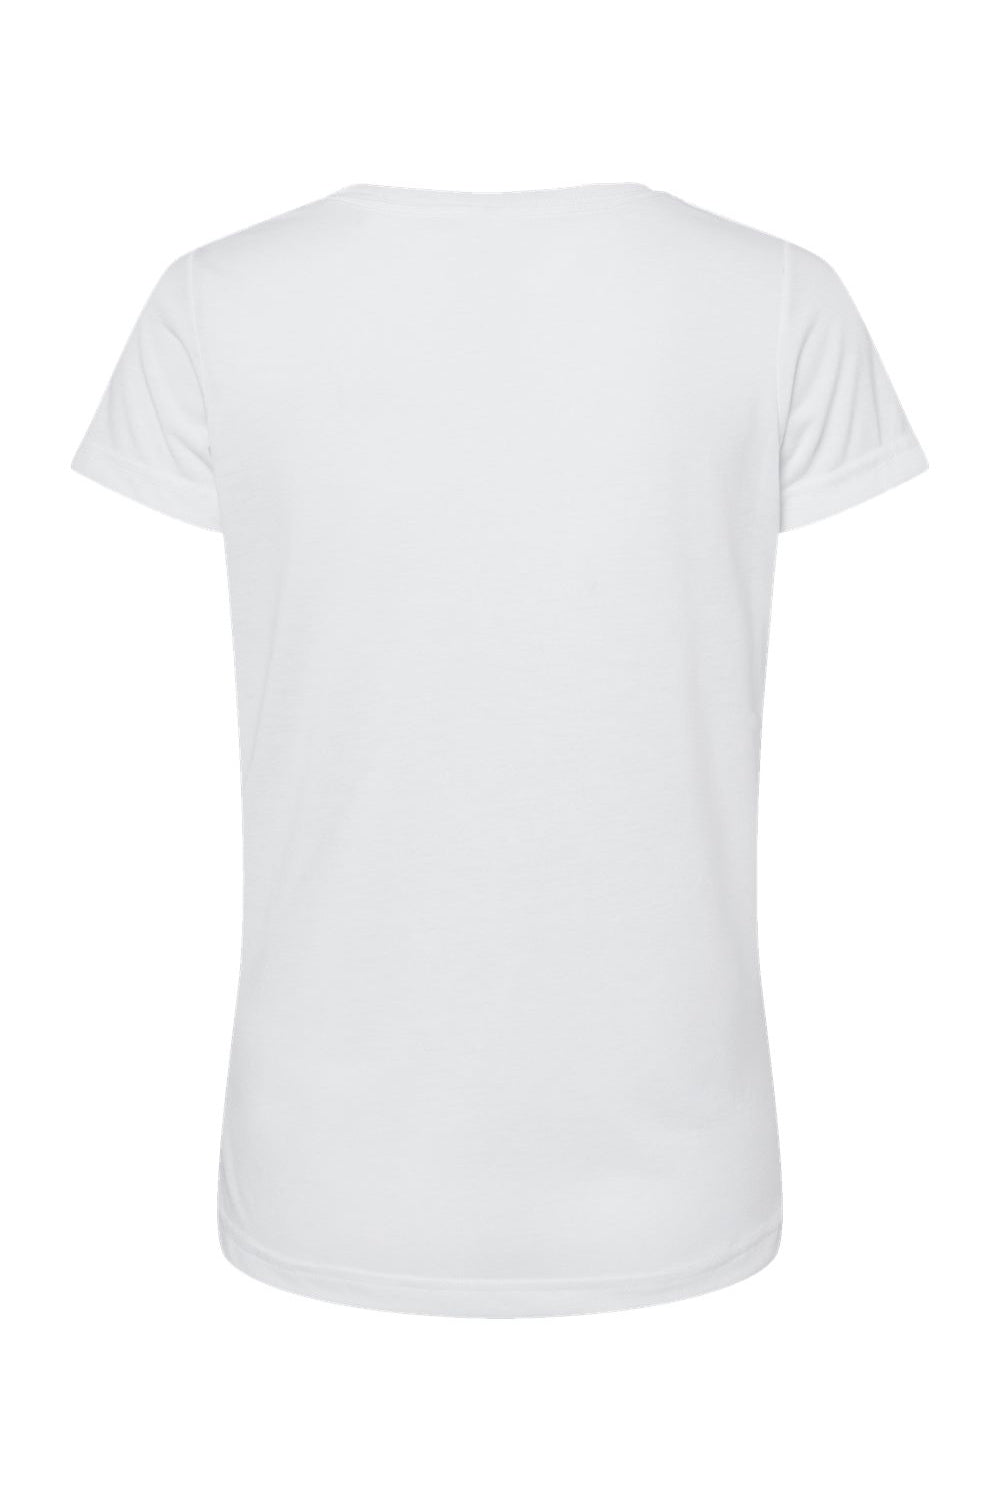 Sublivie 1510 Womens Polyester Sublimation Short Sleeve Crewneck T-Shirt White Flat Back